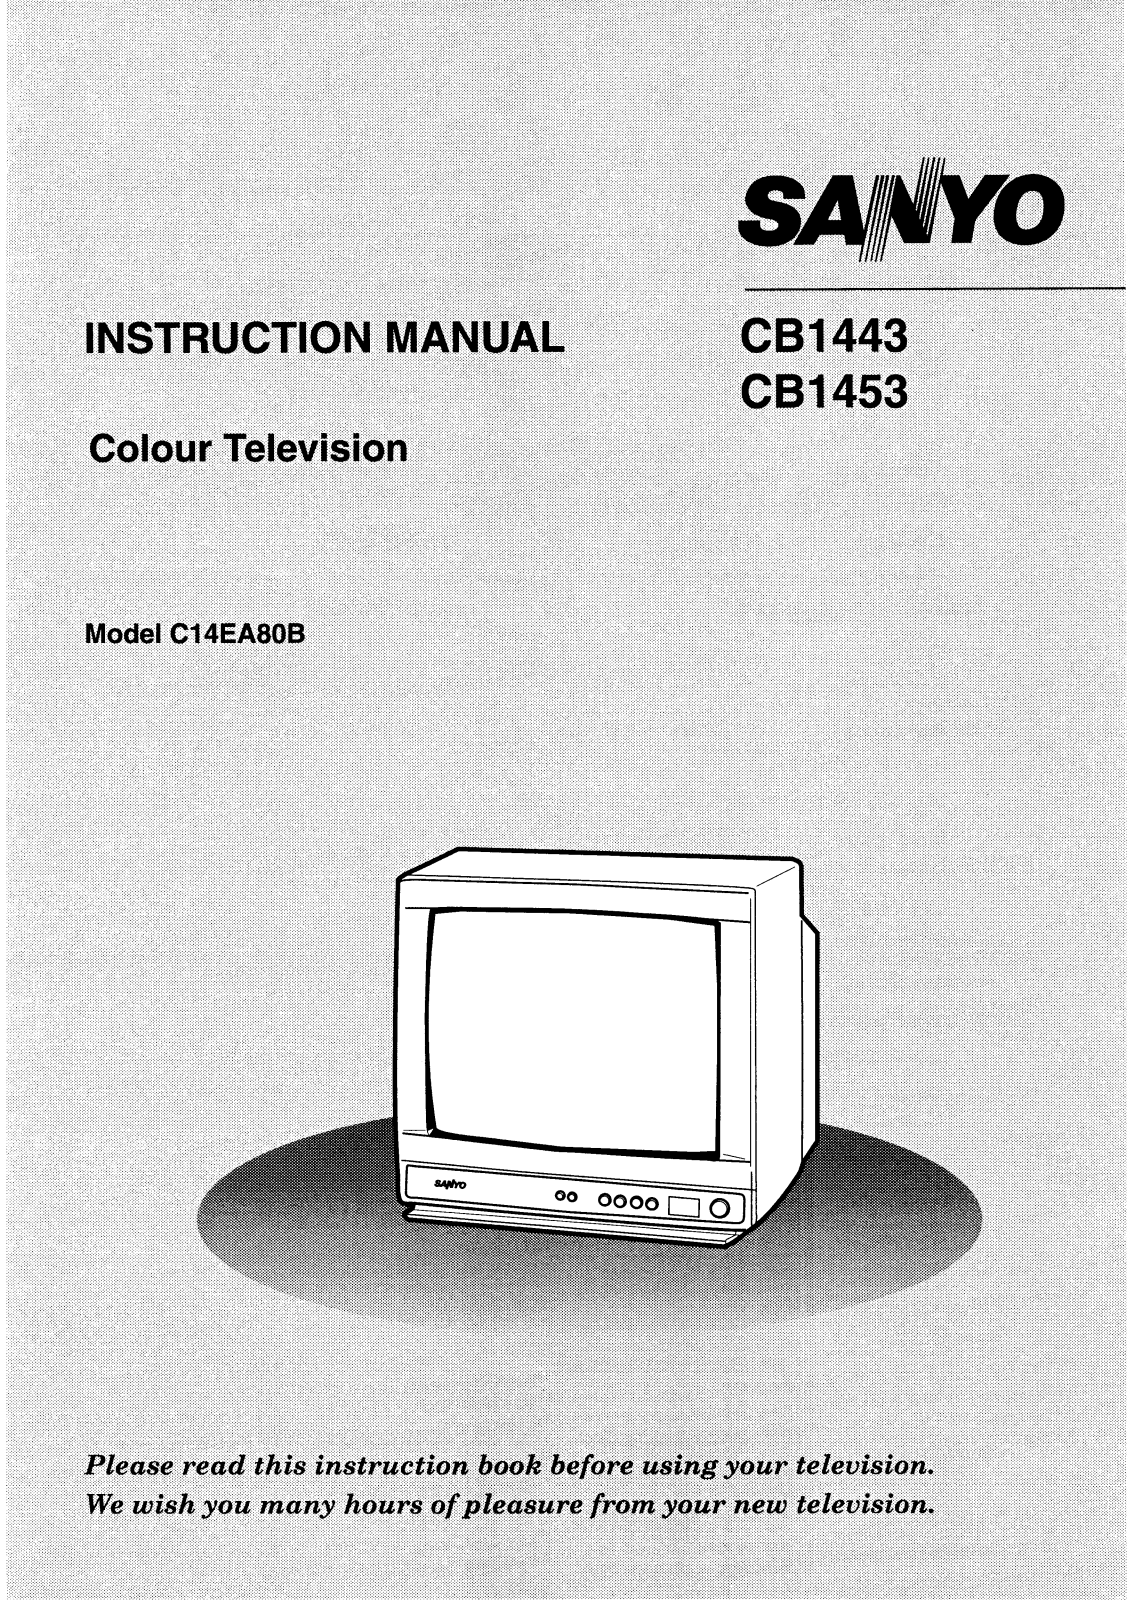 Sanyo CB1453, CB1443 Instruction Manual